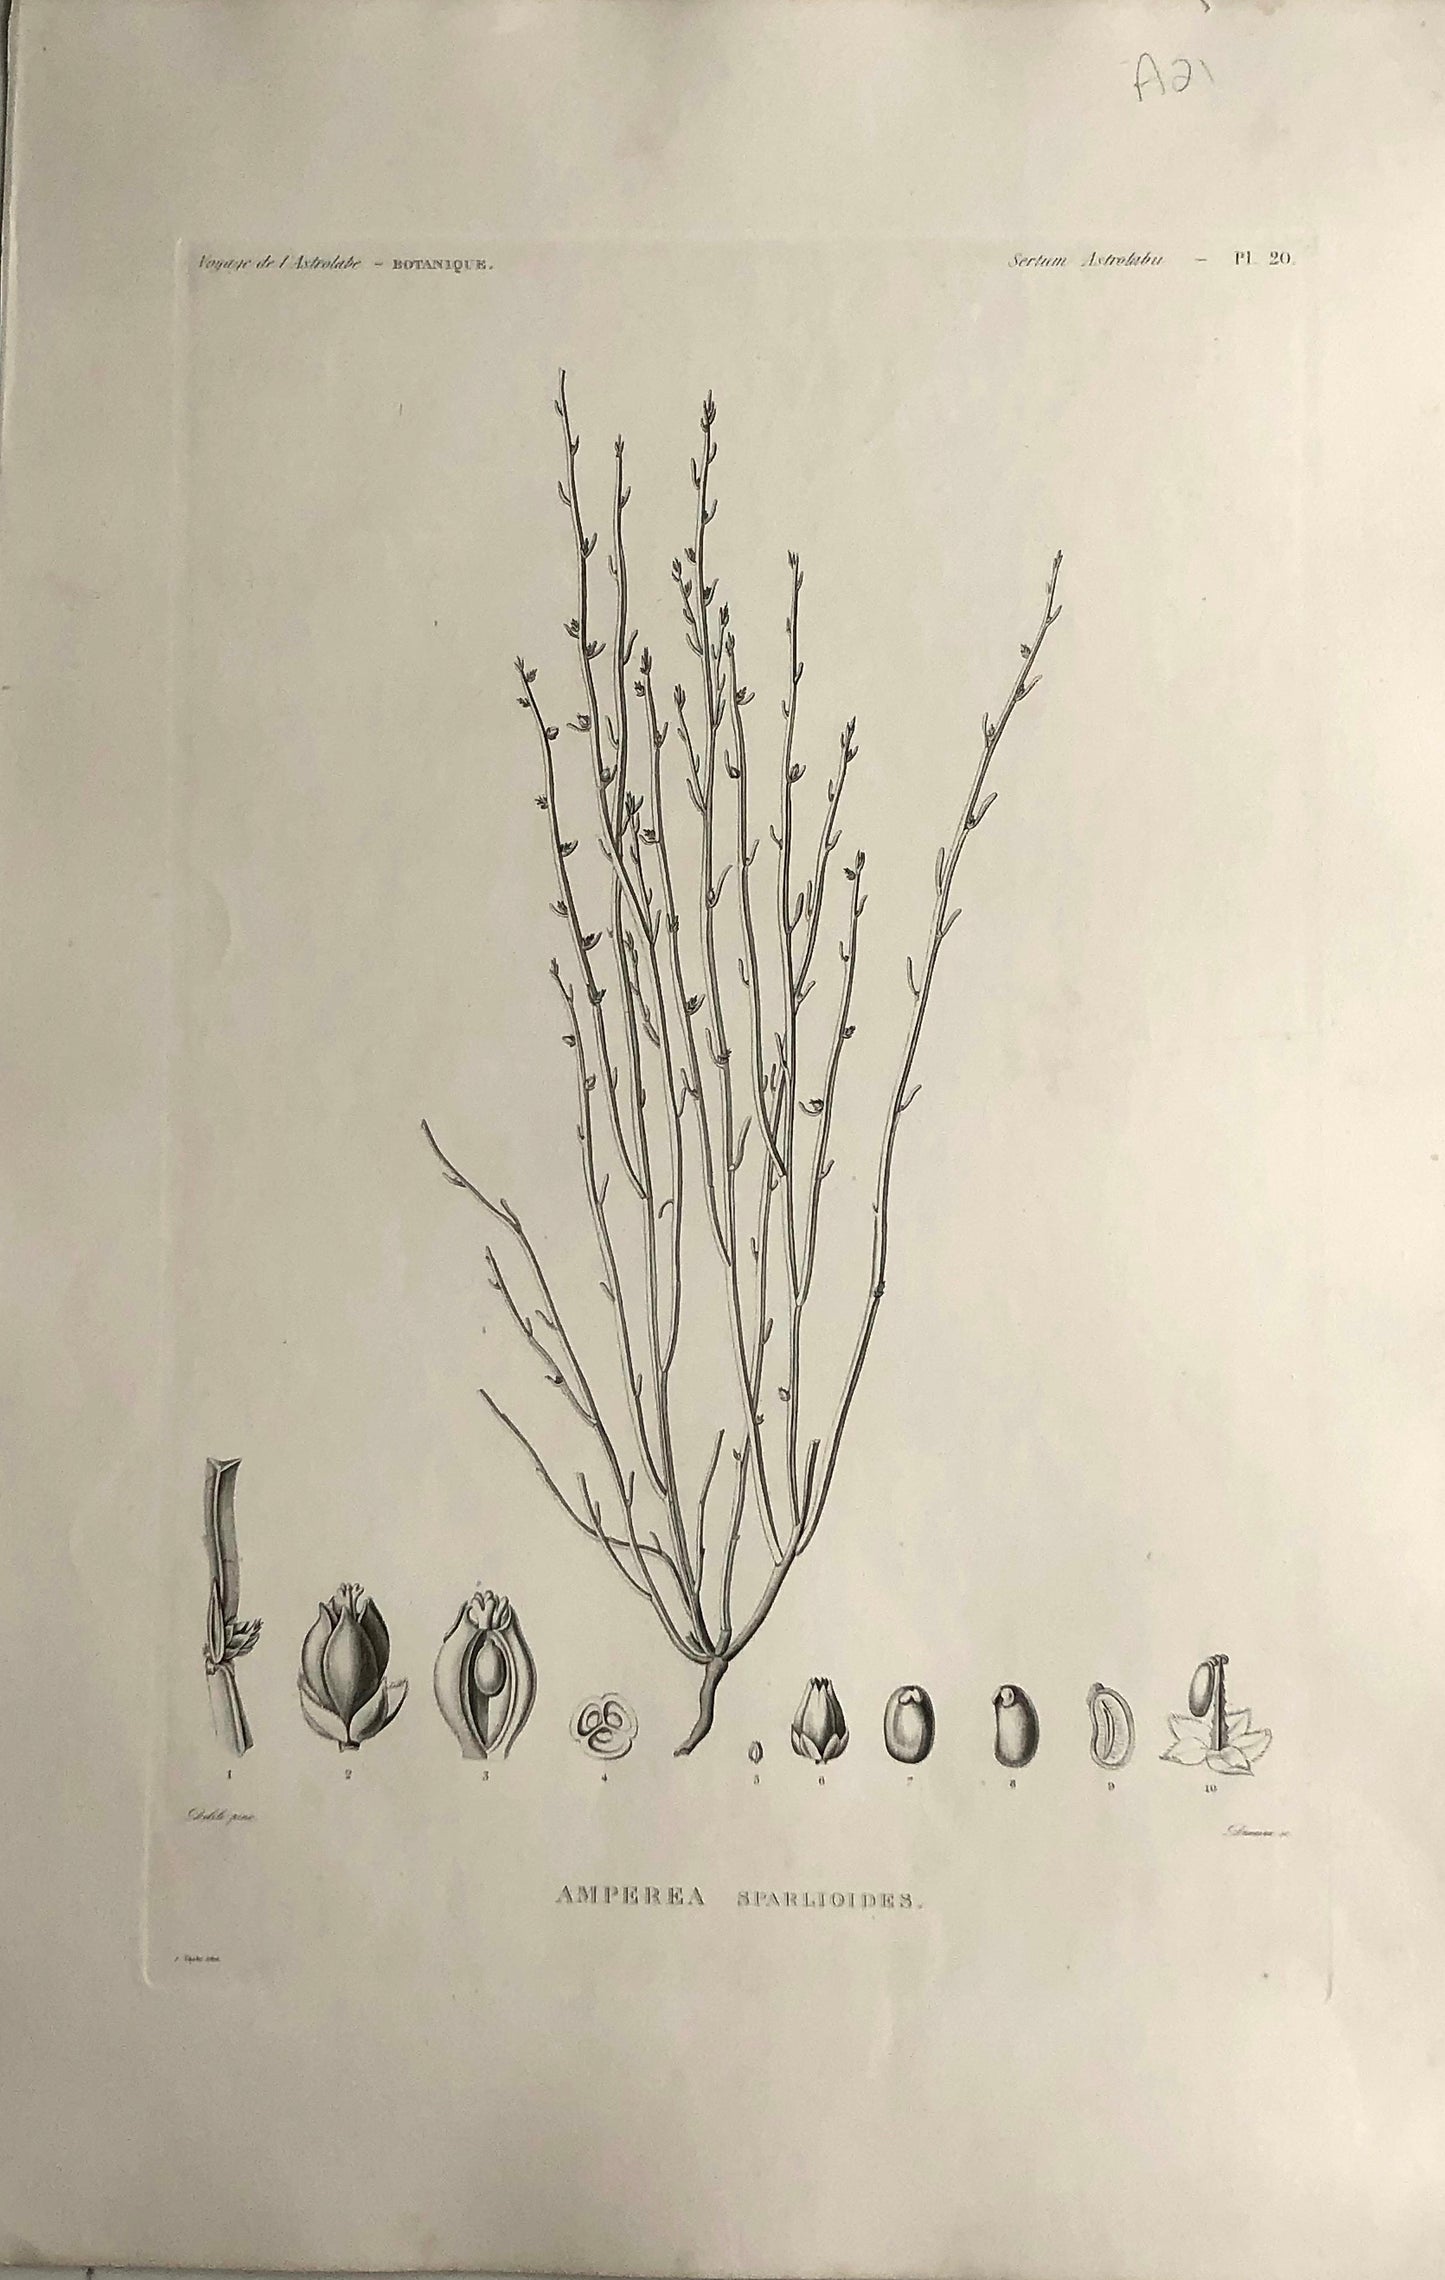 ASTROLABE: Botanical, Amperea Sparloides, Flore de la Australis, TASTU, J,  Paris, 1826-1829, Copperplate Engraving